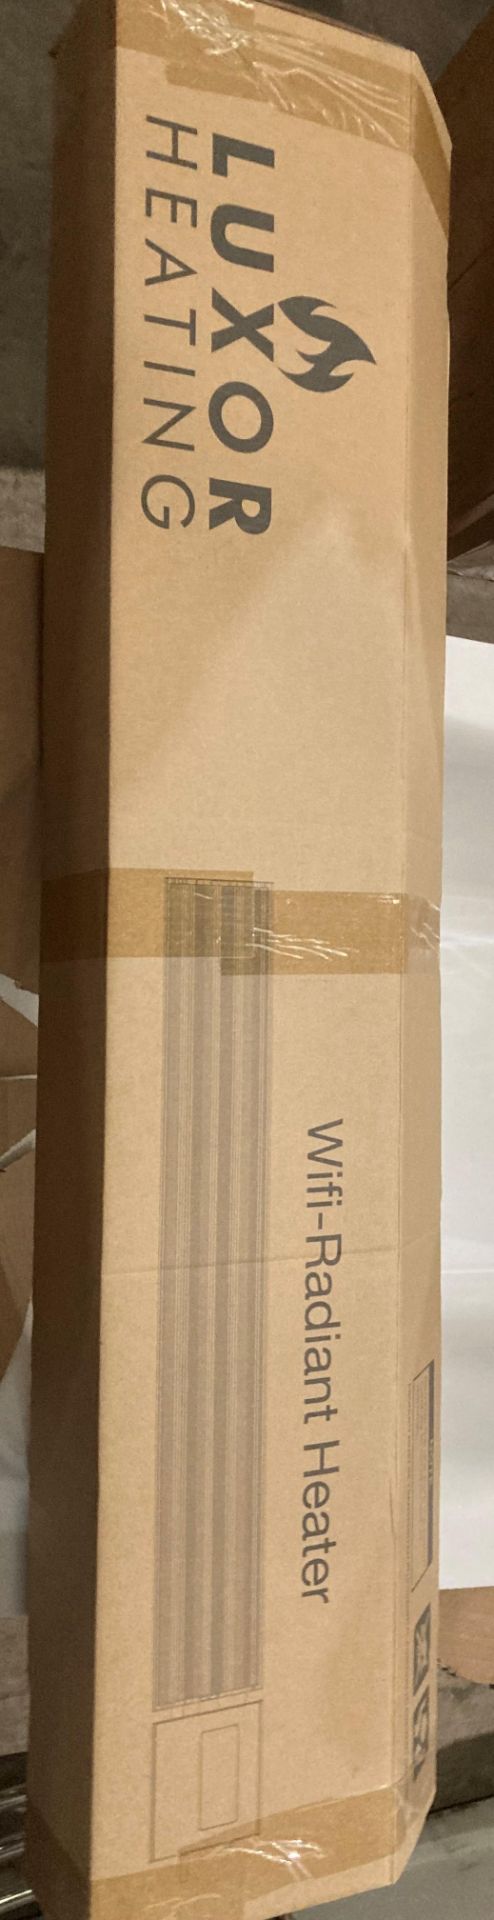 Luxor 1800 watt WIFI Radiant heater in black (new boxed) model LHB18WF (saleroom location: MA1 - Bild 2 aus 3